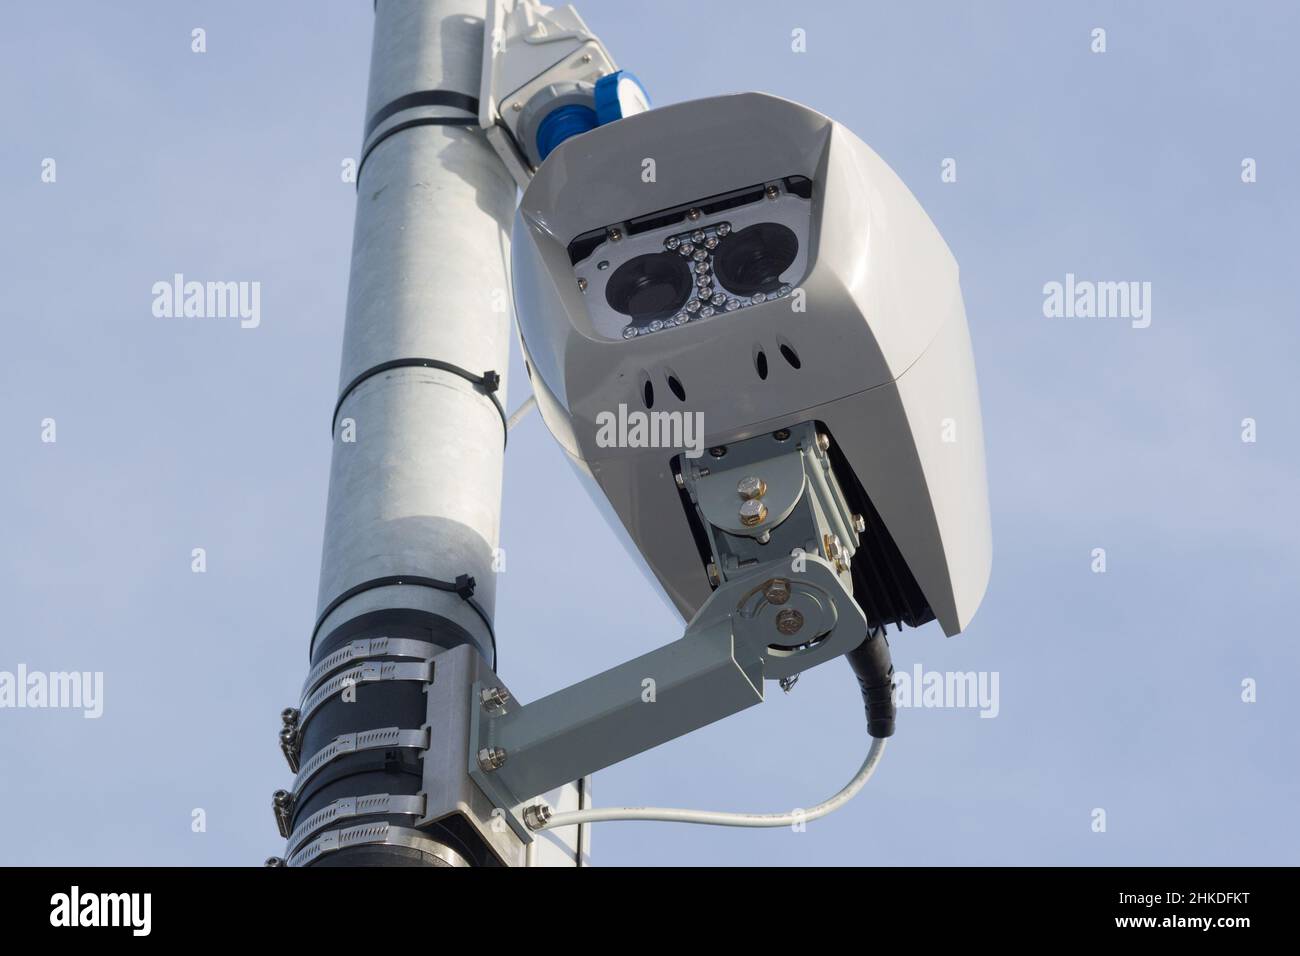 Telecamera ANPR Siemens Sicore II installata a Greater Manchester come parte dell'infrastruttura Clean Air zone (CAZ) in fase di lancio a maggio 2022 Foto Stock